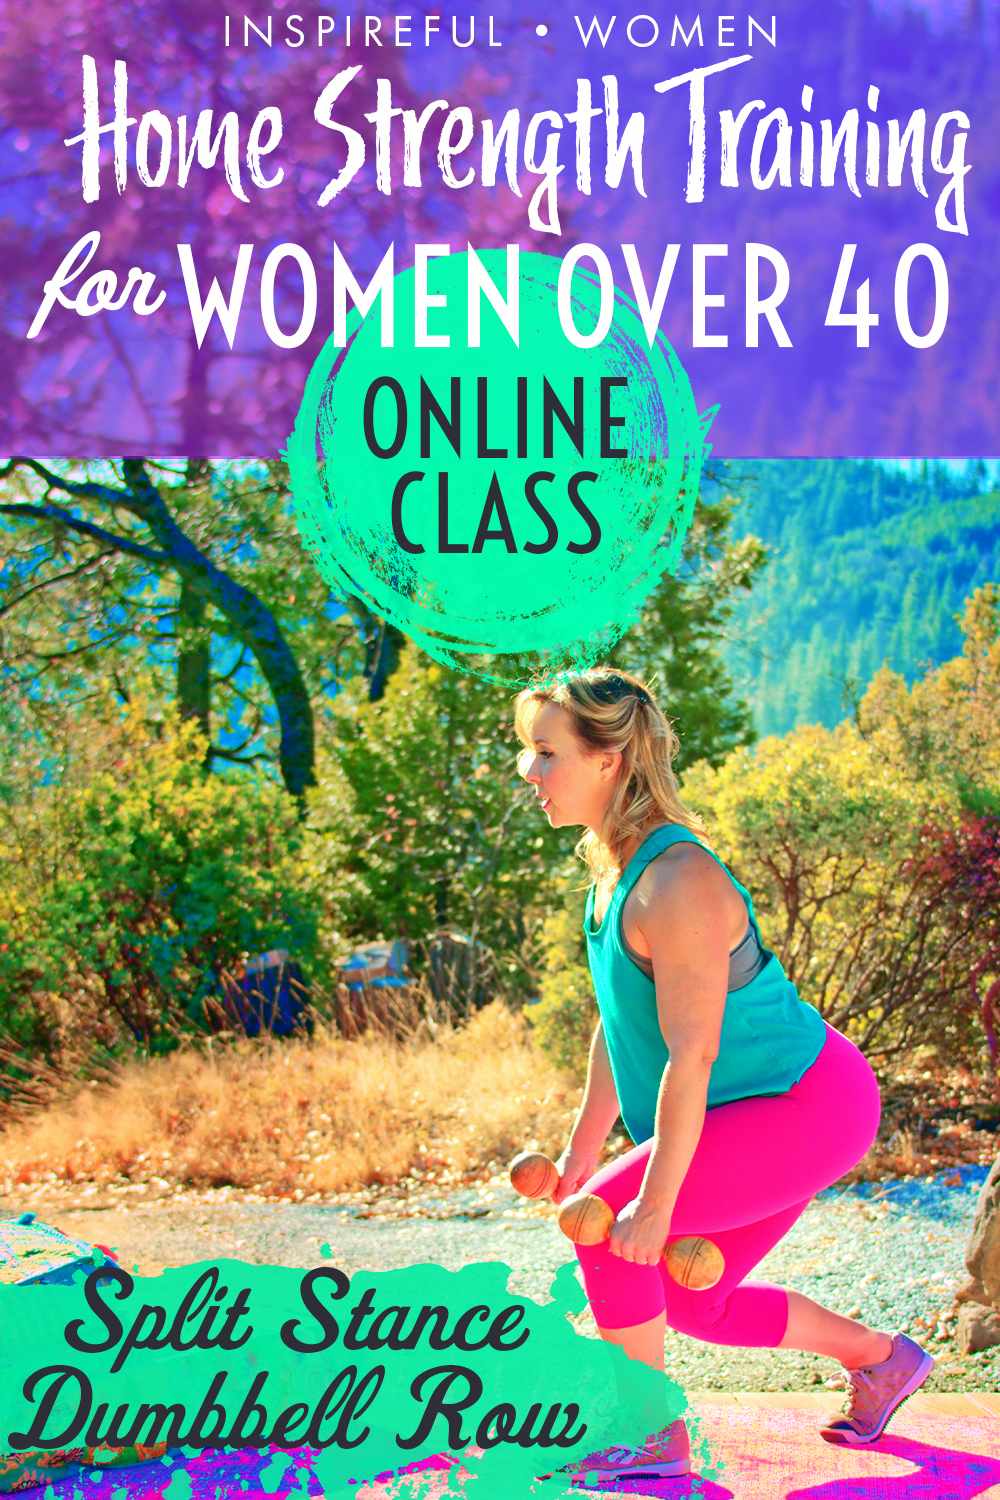 split-stance-dumbbell-row-strength-training-online-class-women-over-40